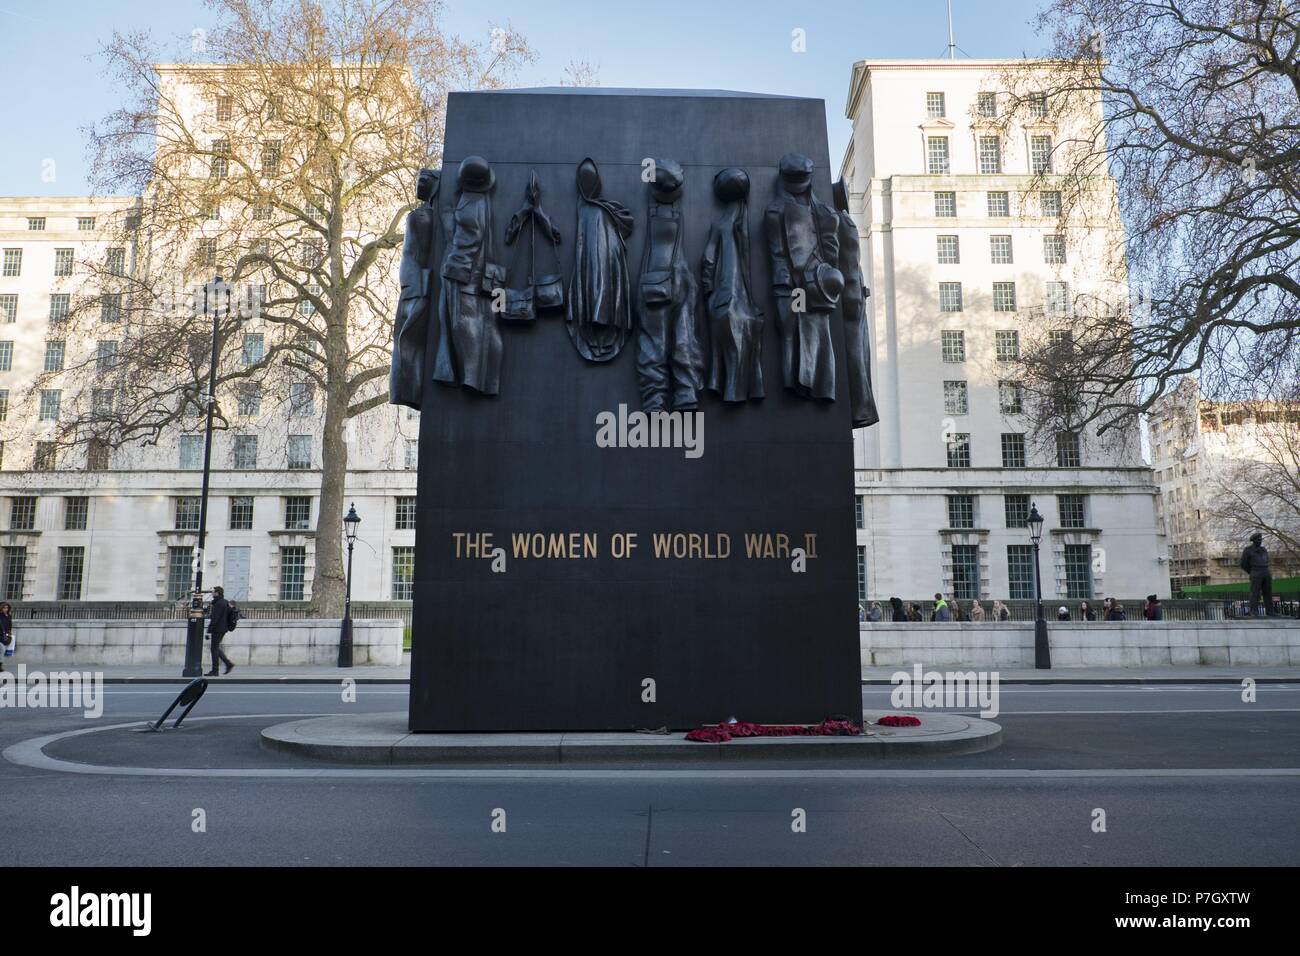 Monumento a las mujeres de la II Guerra Mundial en Londres. Stock Photo